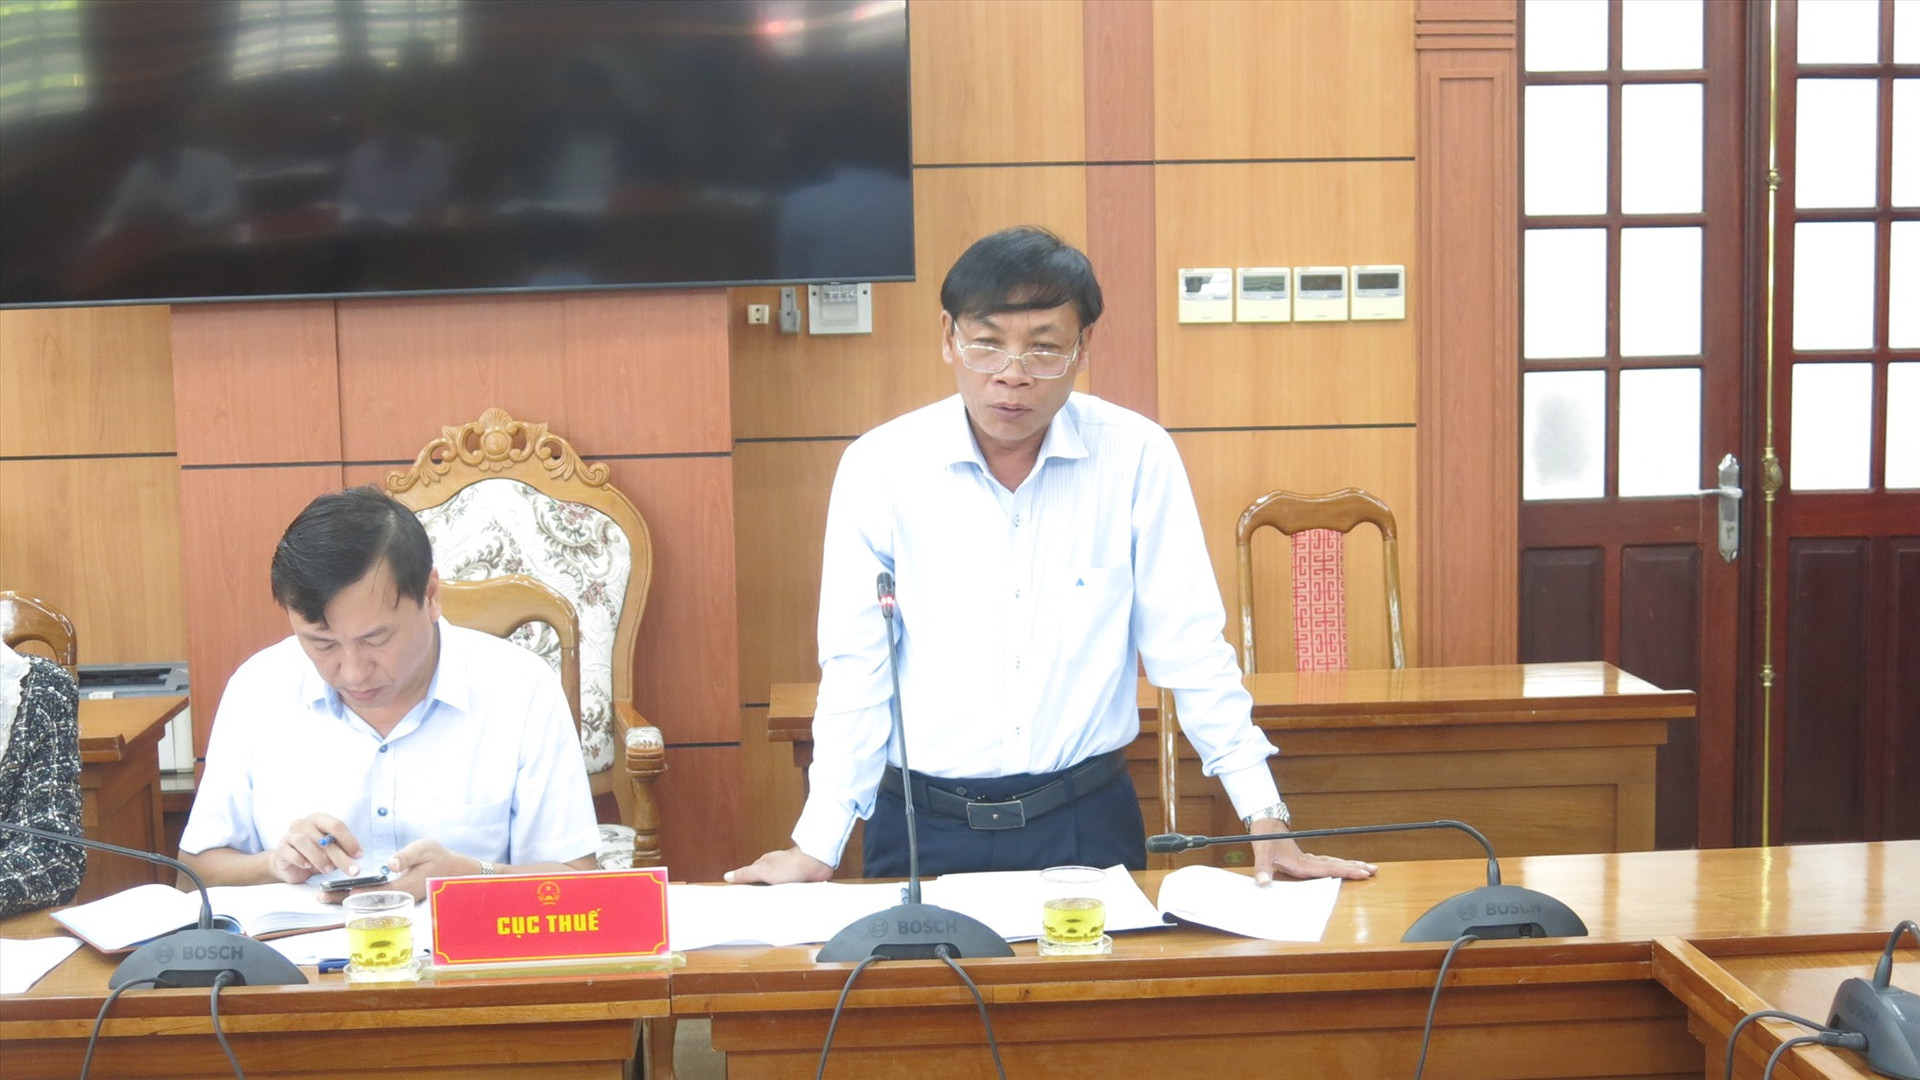 Cục trưởng Cục Thuế Nguyễn Văn Tiếp cam kết thu ngân sách nội địa năm 2023 và kể cả năm 2024 cũng sẽ đạt 100% dự toán đề ra